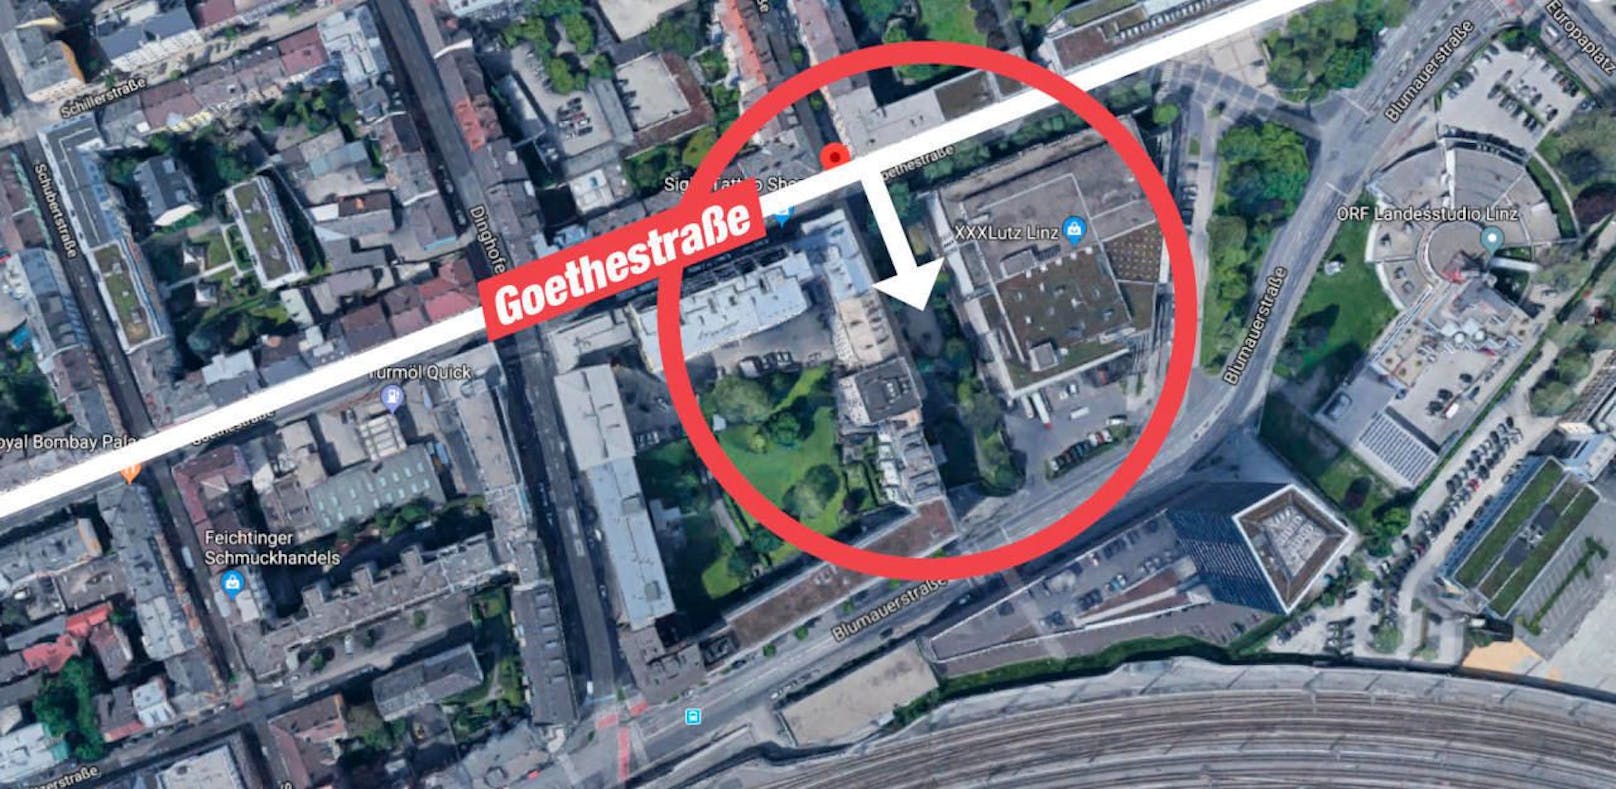 Die RLB will ihre Zentrale ausbauen, deshalb soll die Goethestraße &quot;verlegt&quot; werden.